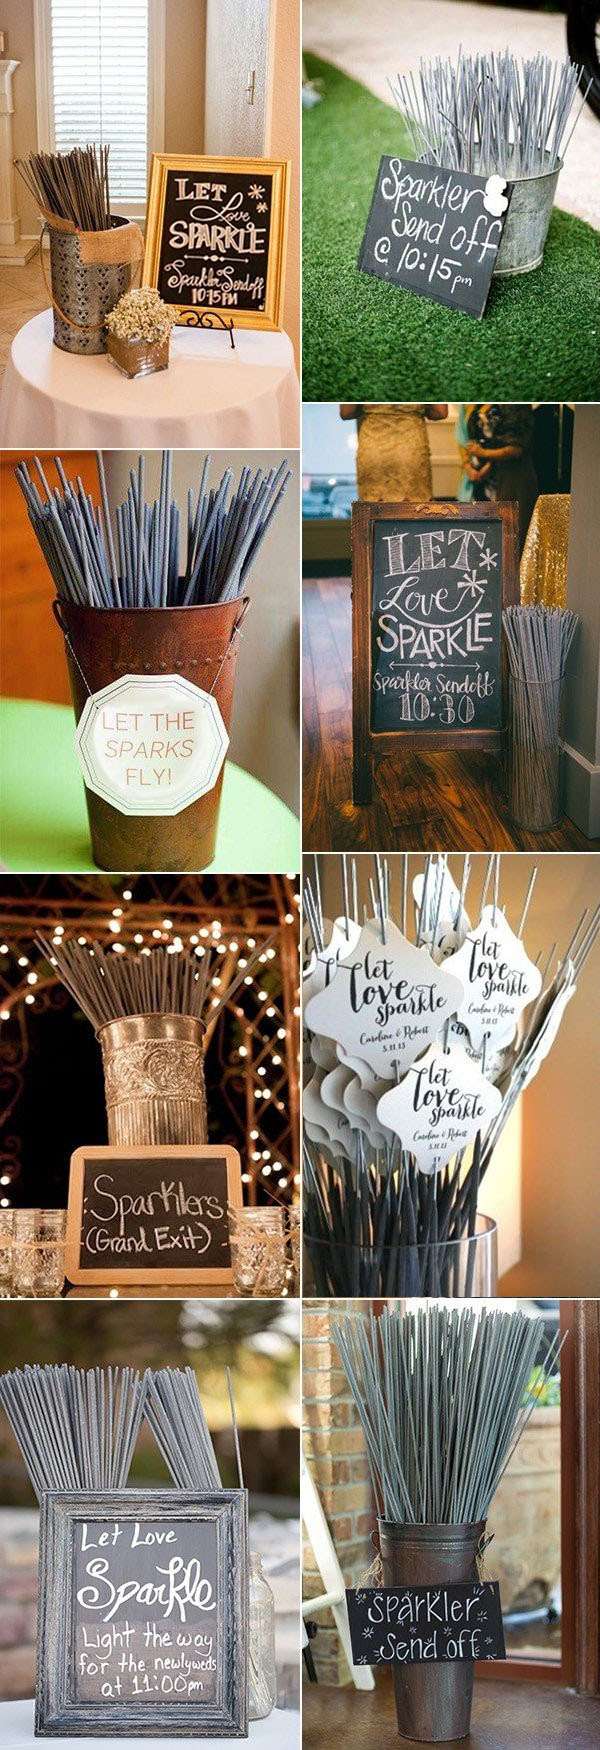 sparklers send off fall wedding ideas